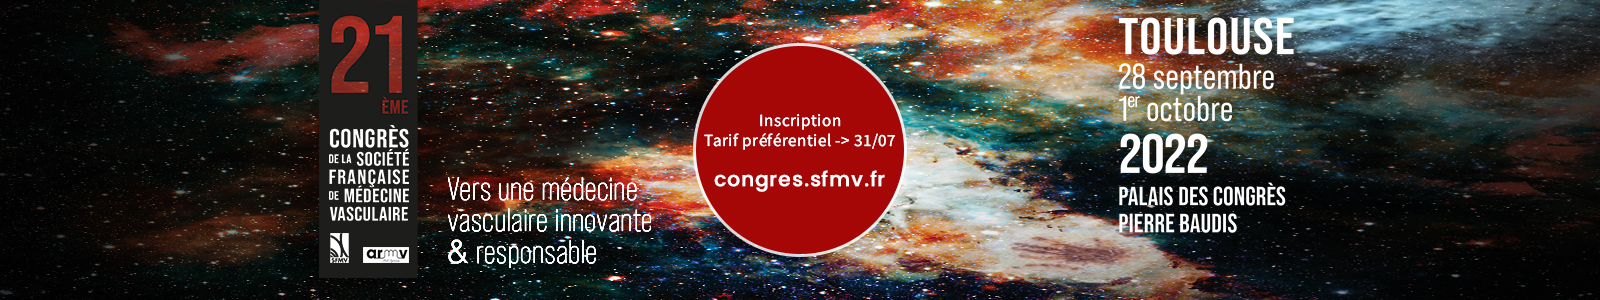 21ème Congres SFMV - TOULOUSE 2022